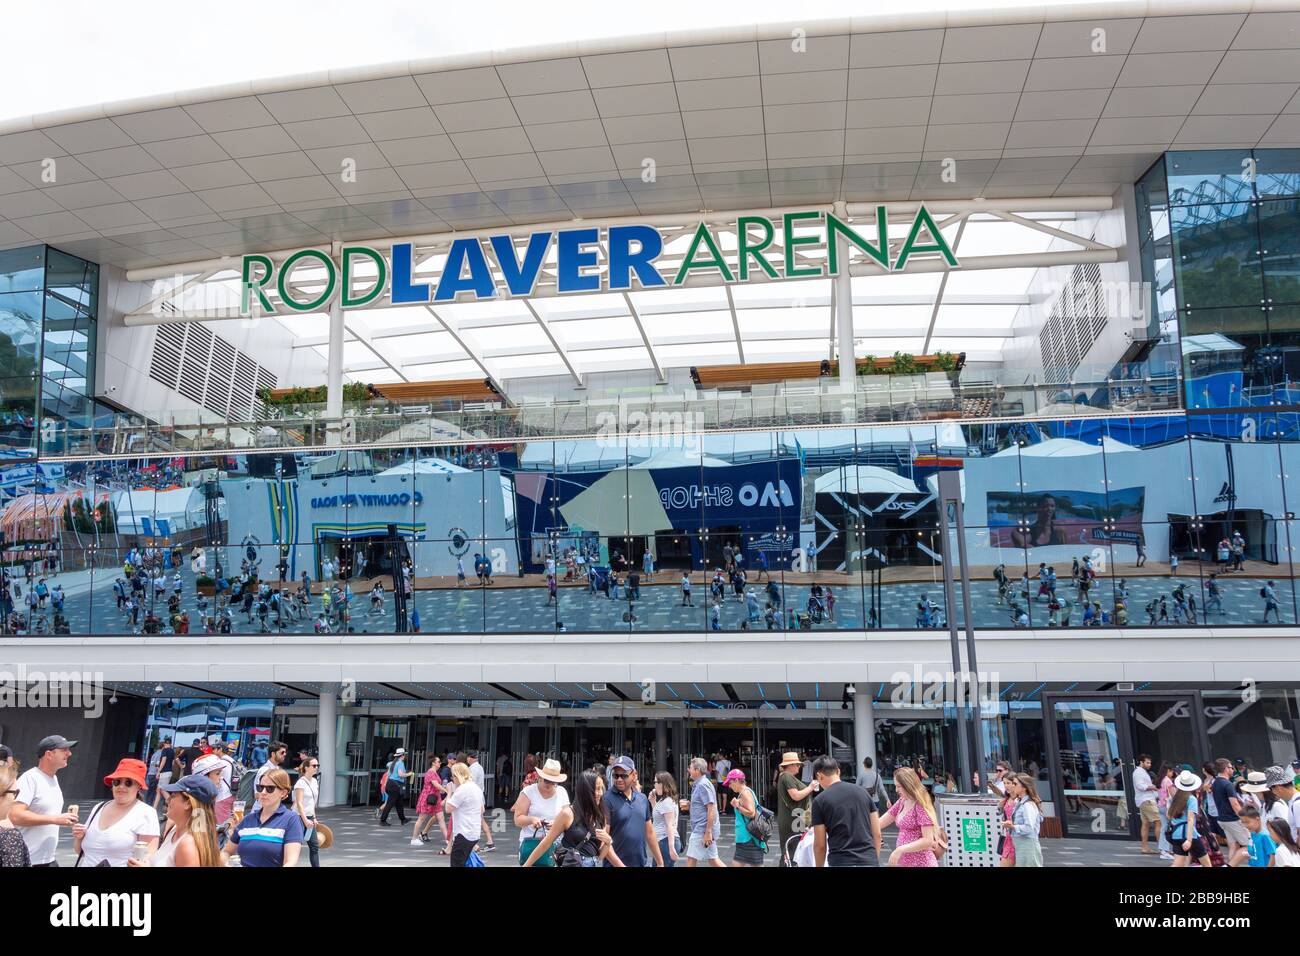 Rod laver Arena au tournoi de tennis Melbourne Open 2020, City Central, Melbourne, Victoria, Australie Banque D'Images